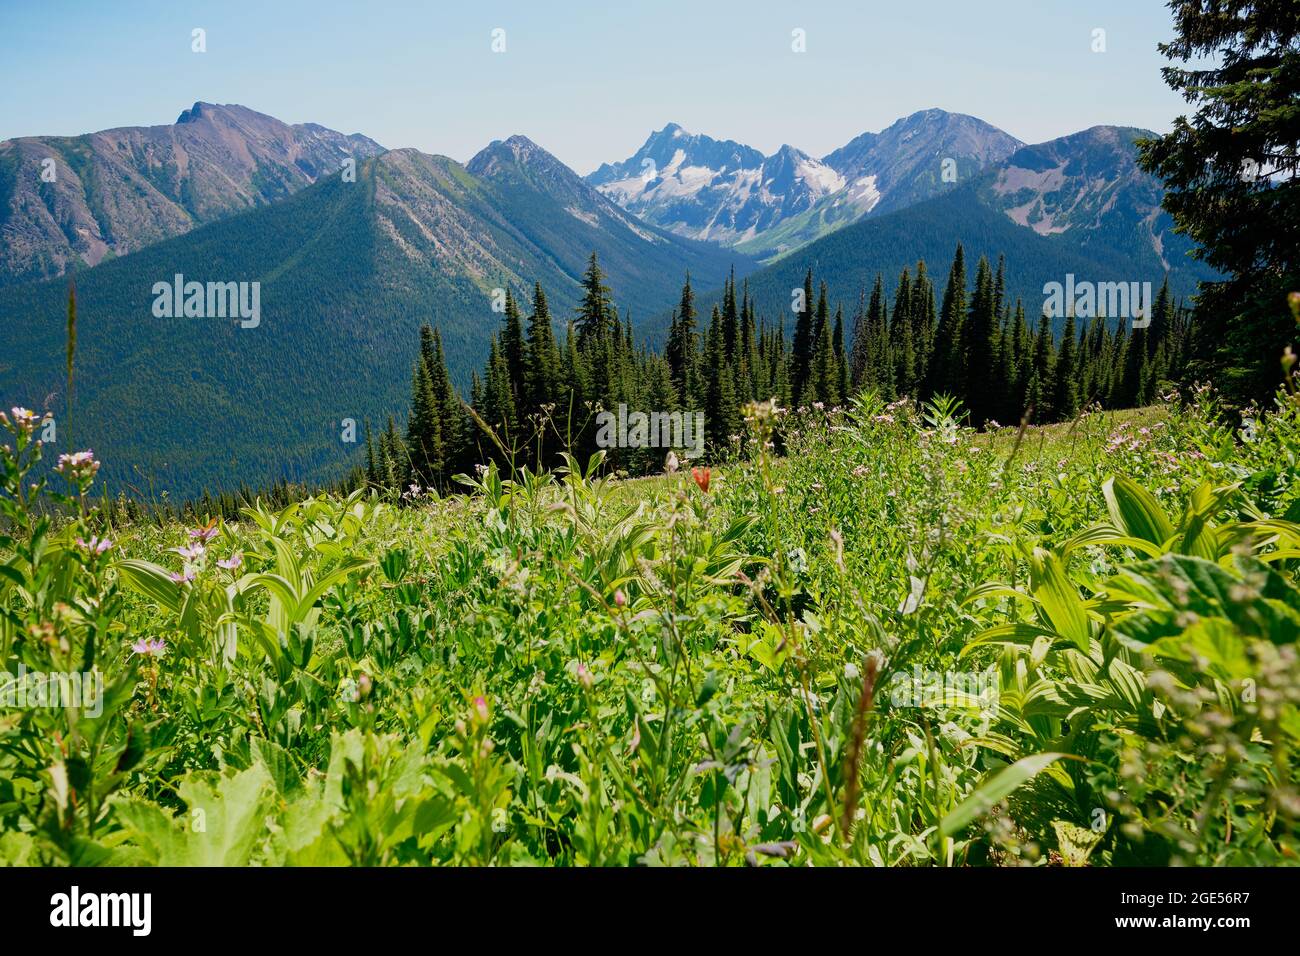 Wildblumen, alpine Wiesen, Wald und Berggipfel: Herrliche Ausblicke vom Skyline Trail, Manning Park, BC, Kanada Stockfoto